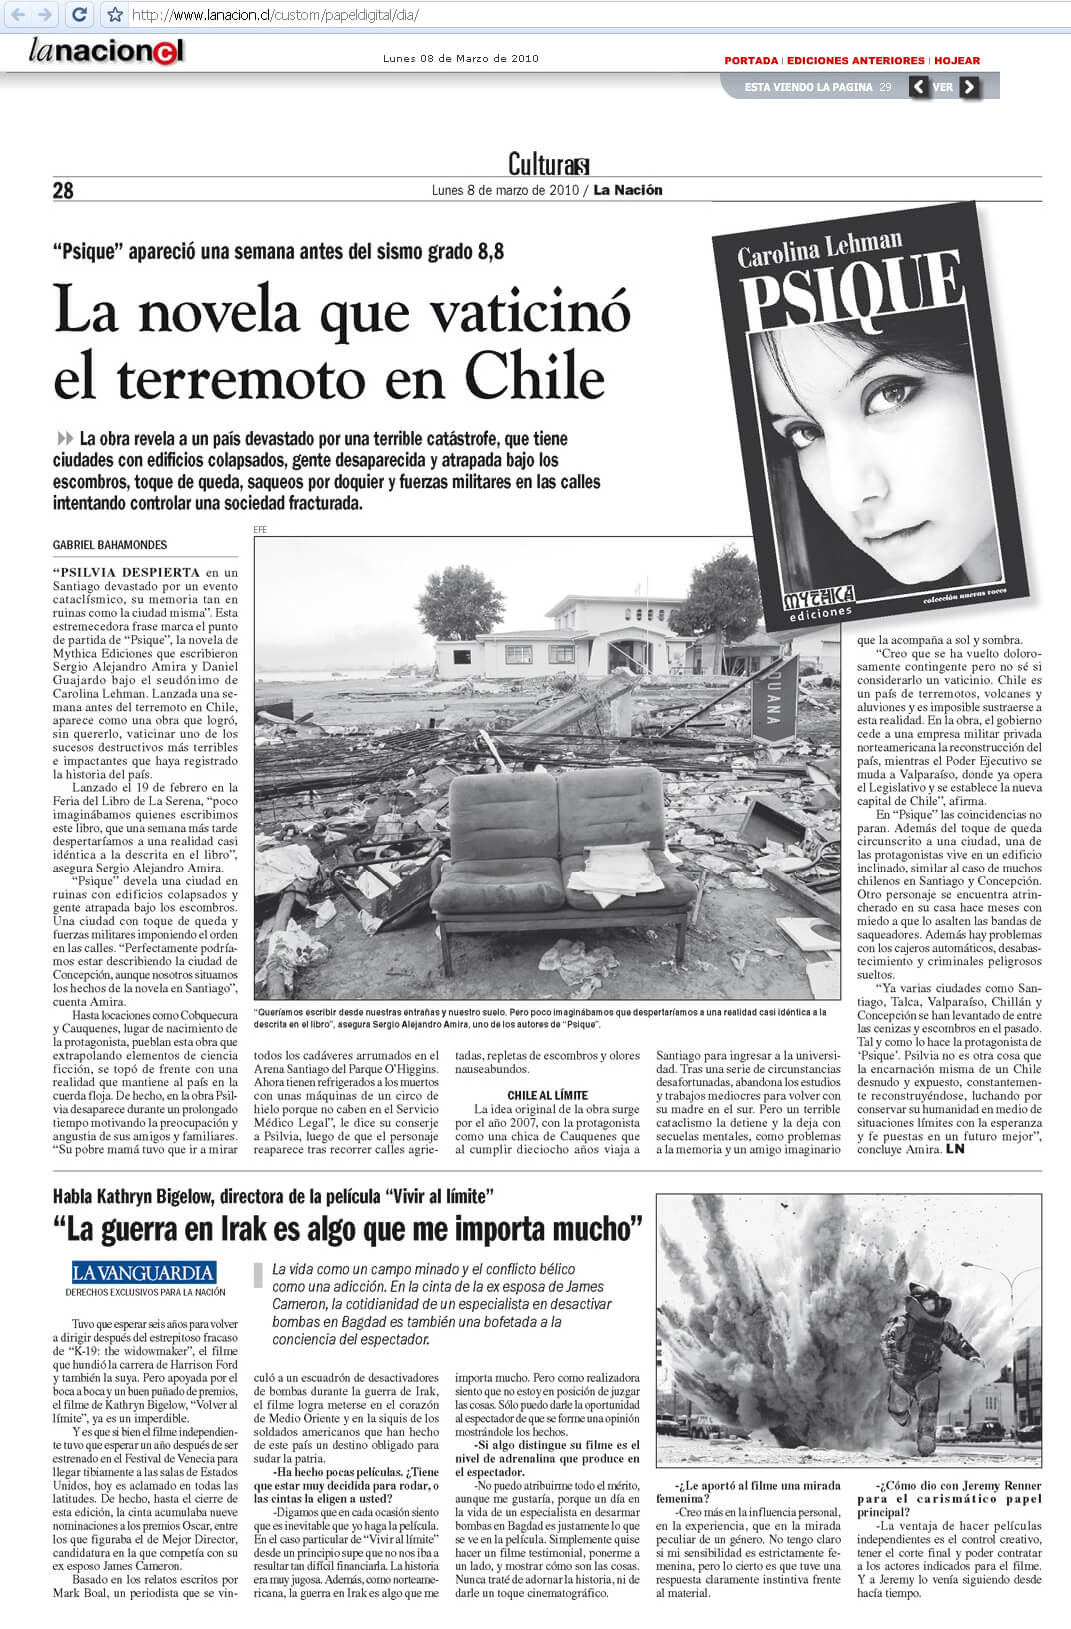 Psique en diario La Nación 2010